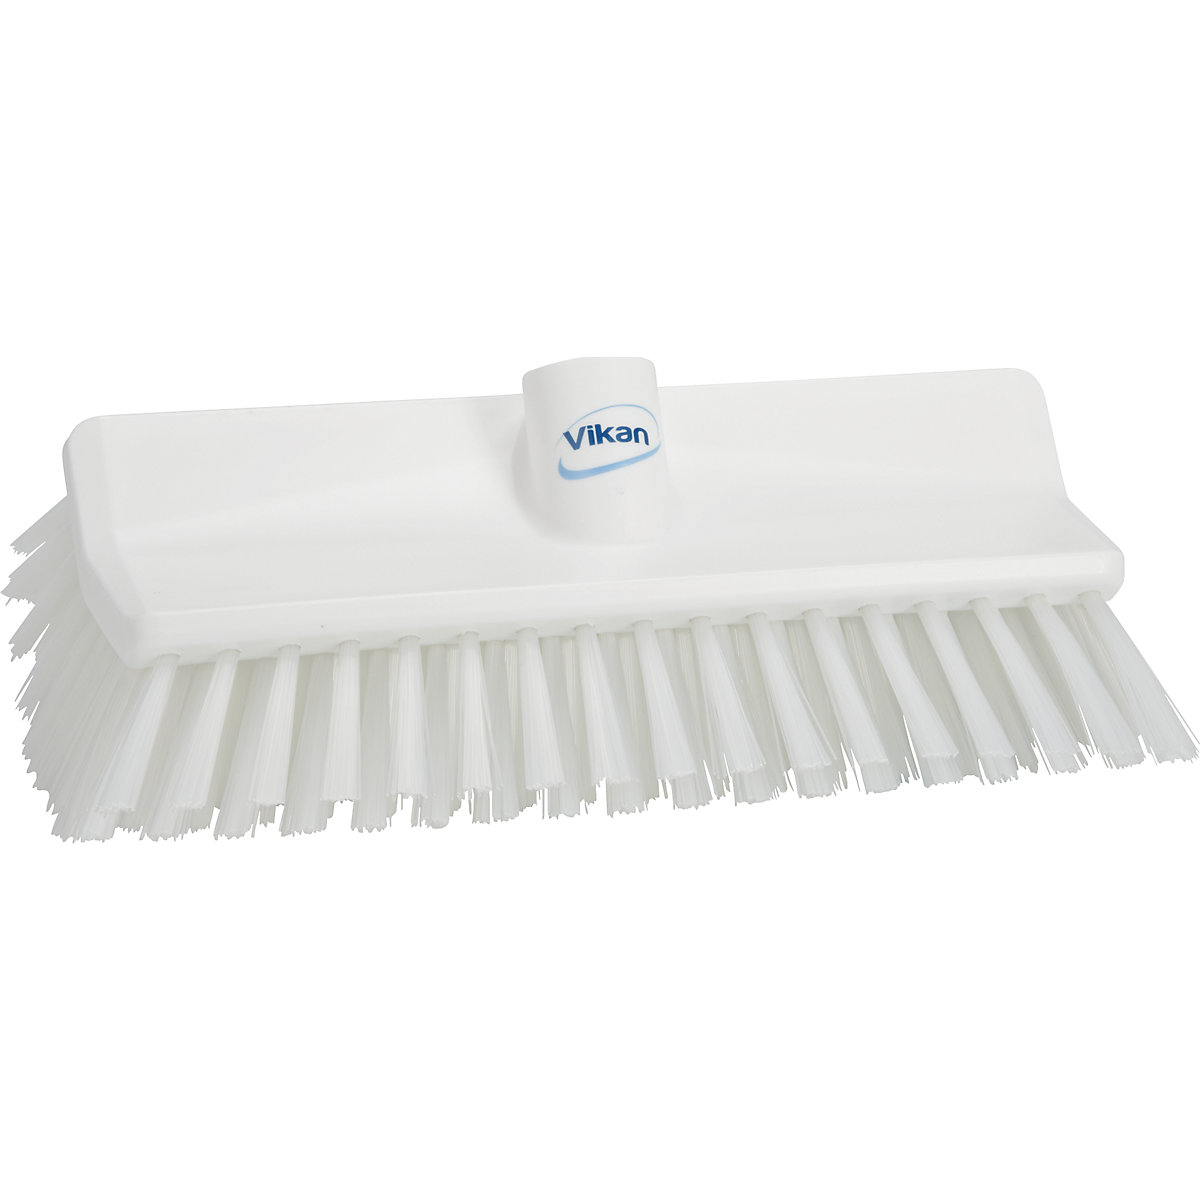 Vikan – High-low brush/corner scrubbing brush, medium, pack of 10, white